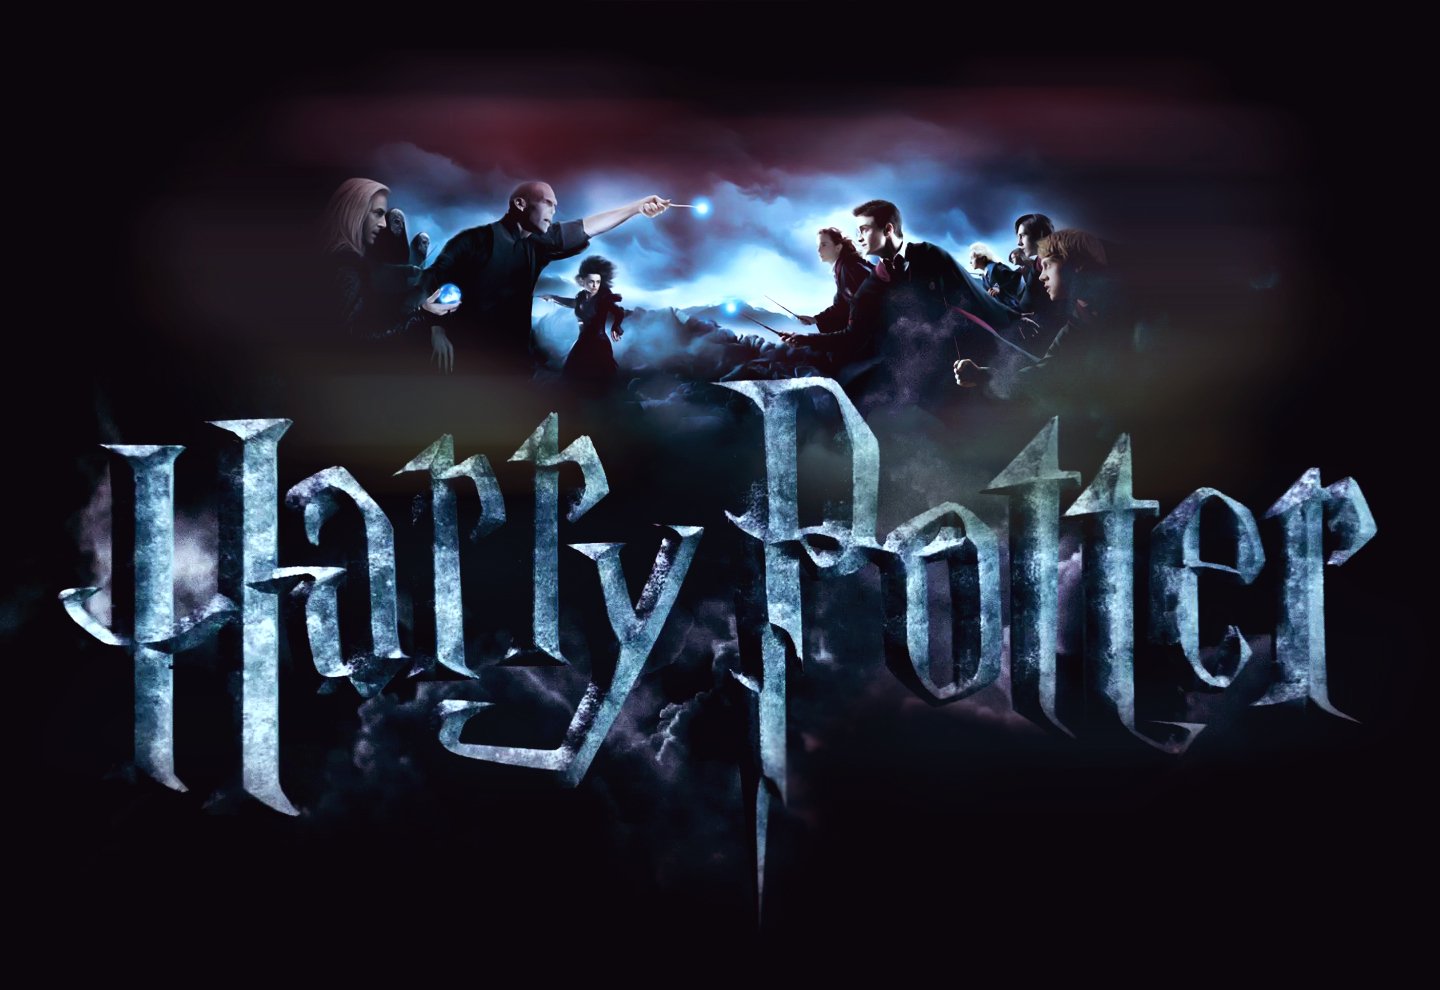 25 Top Harry Potter Wallpaper